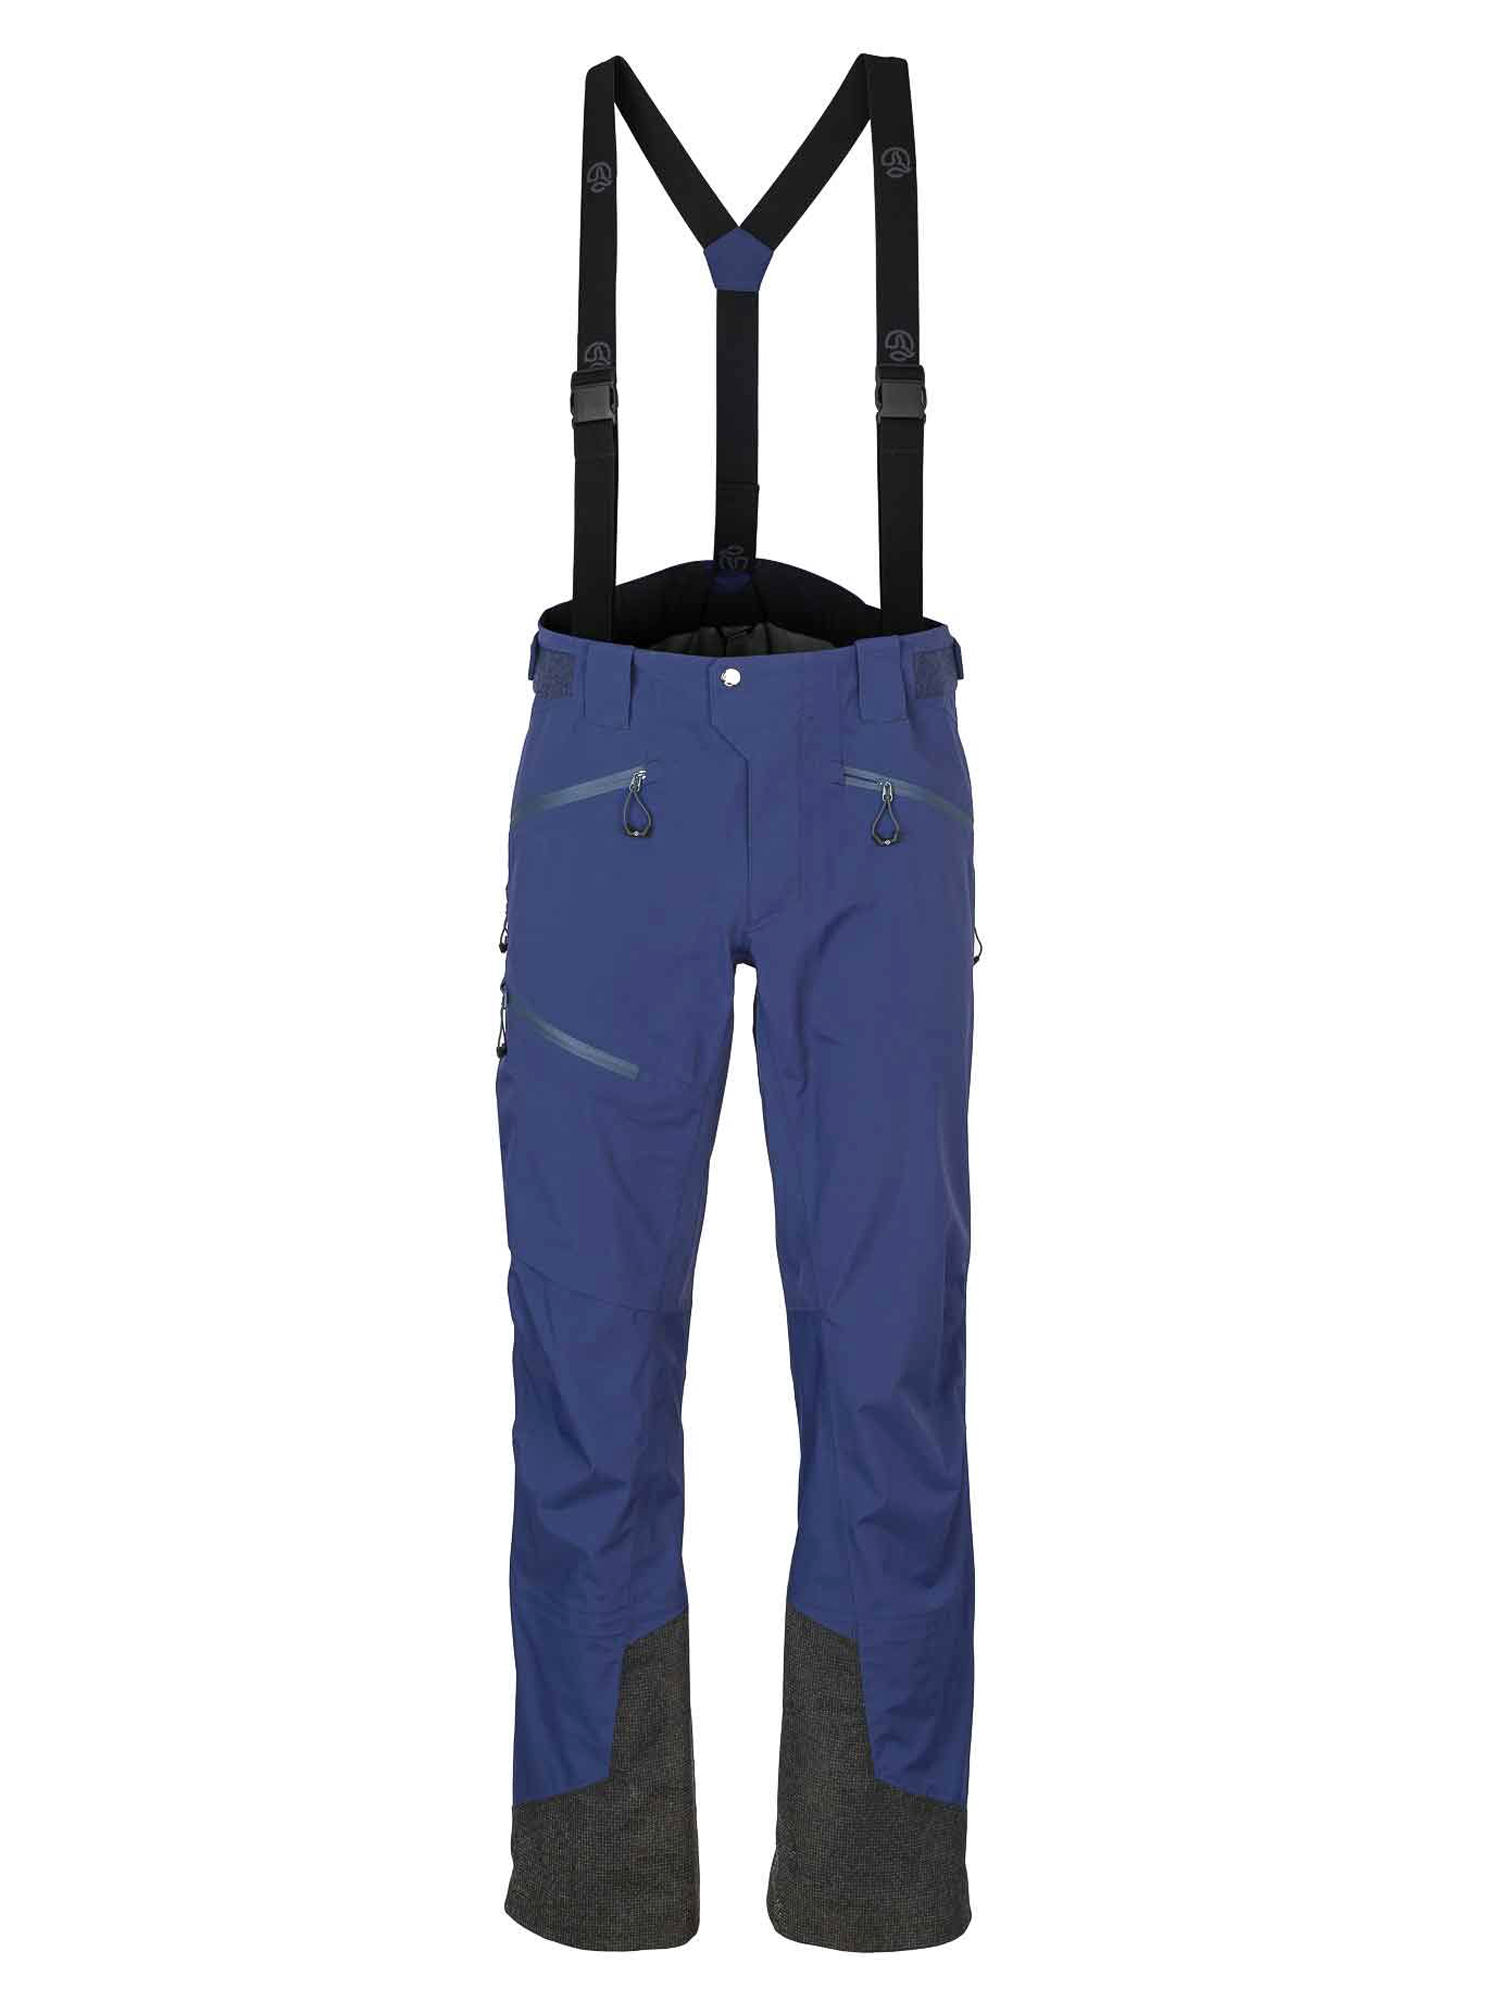 Спортивные брюки мужские Ternua Pantalon Rakaposhi Pt M синие XL